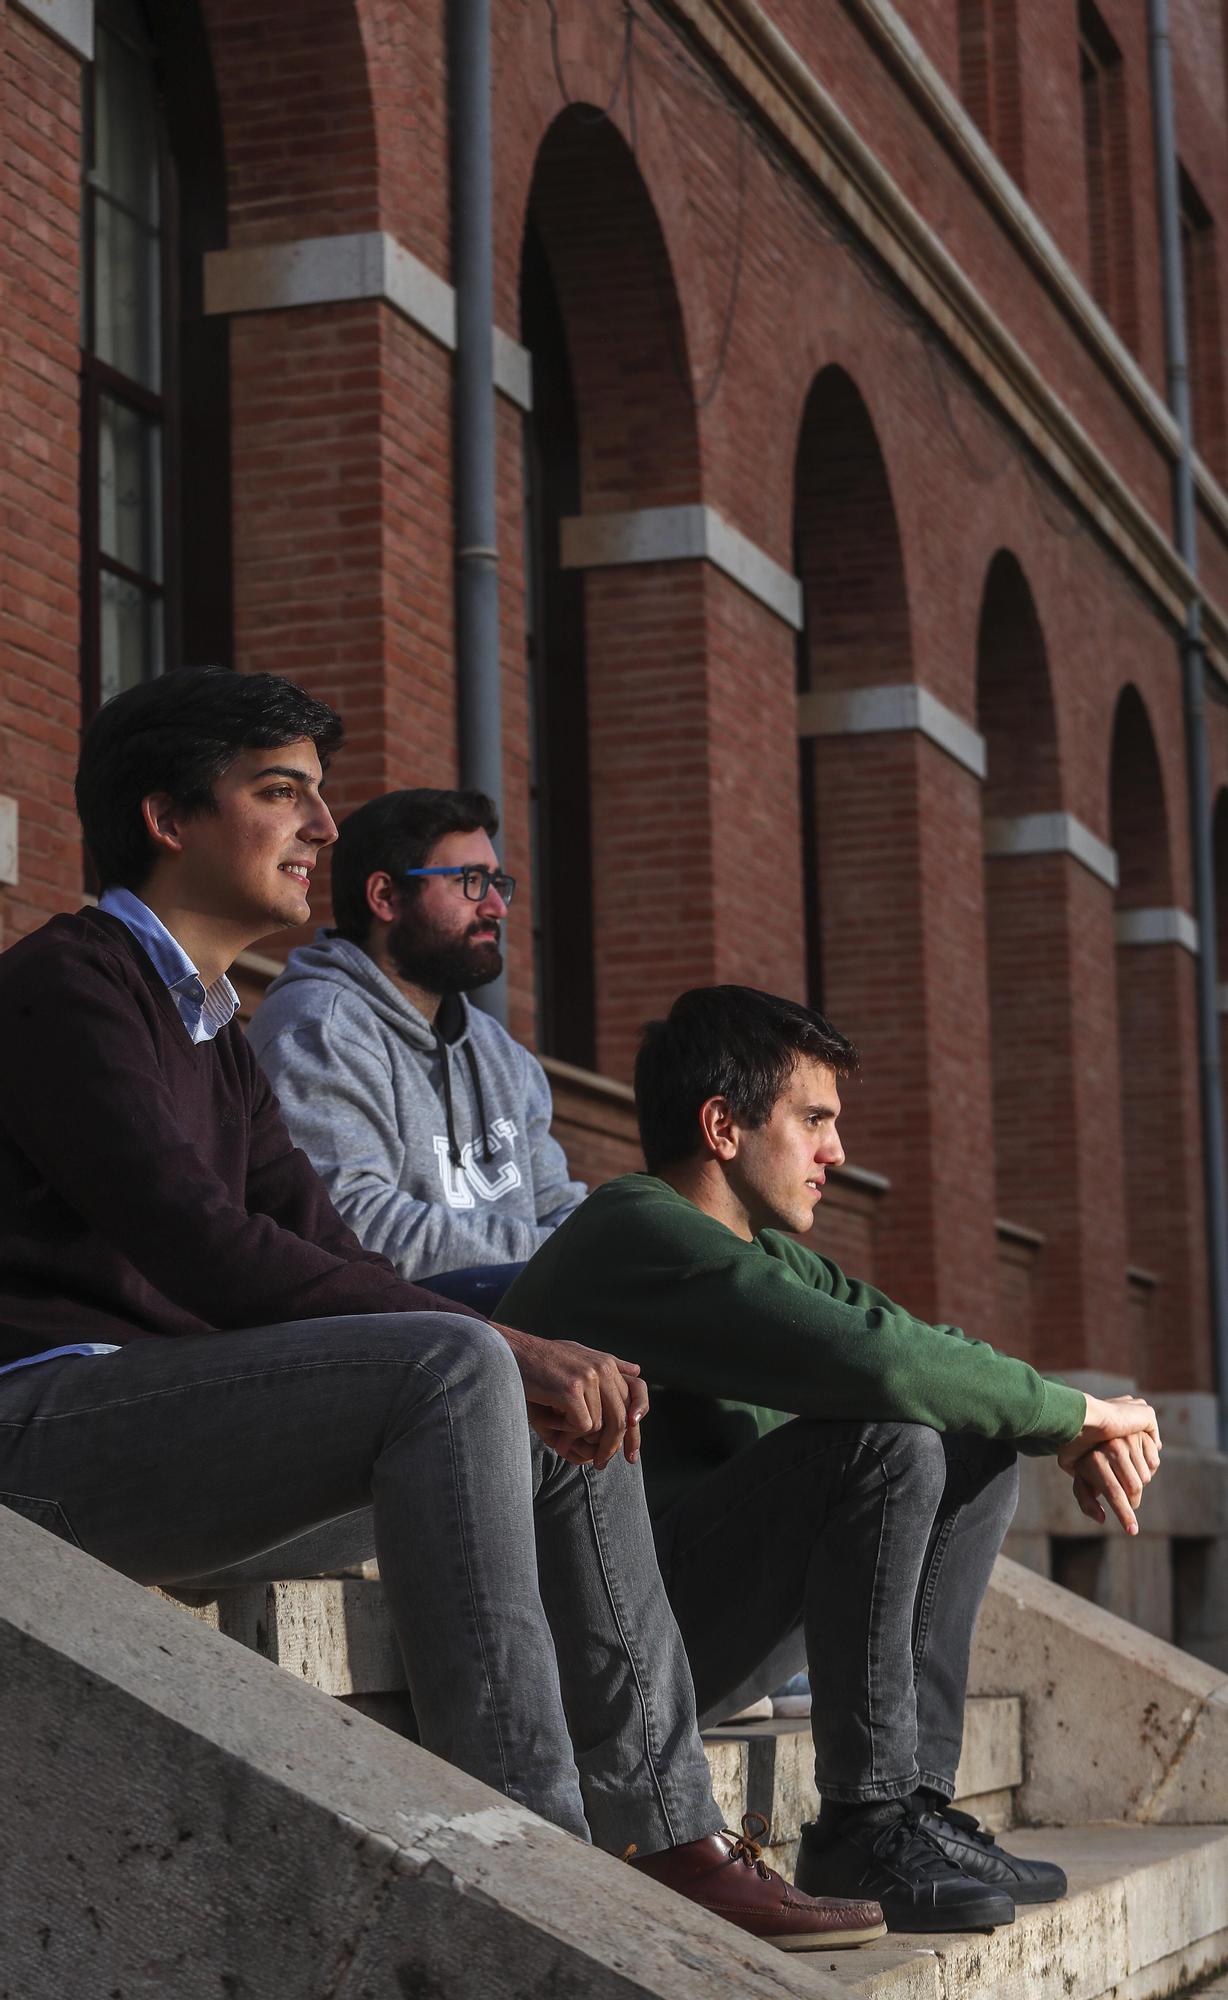 Luis González, Bruno Jiménez y David Rojas, tres seminaristas valencianos